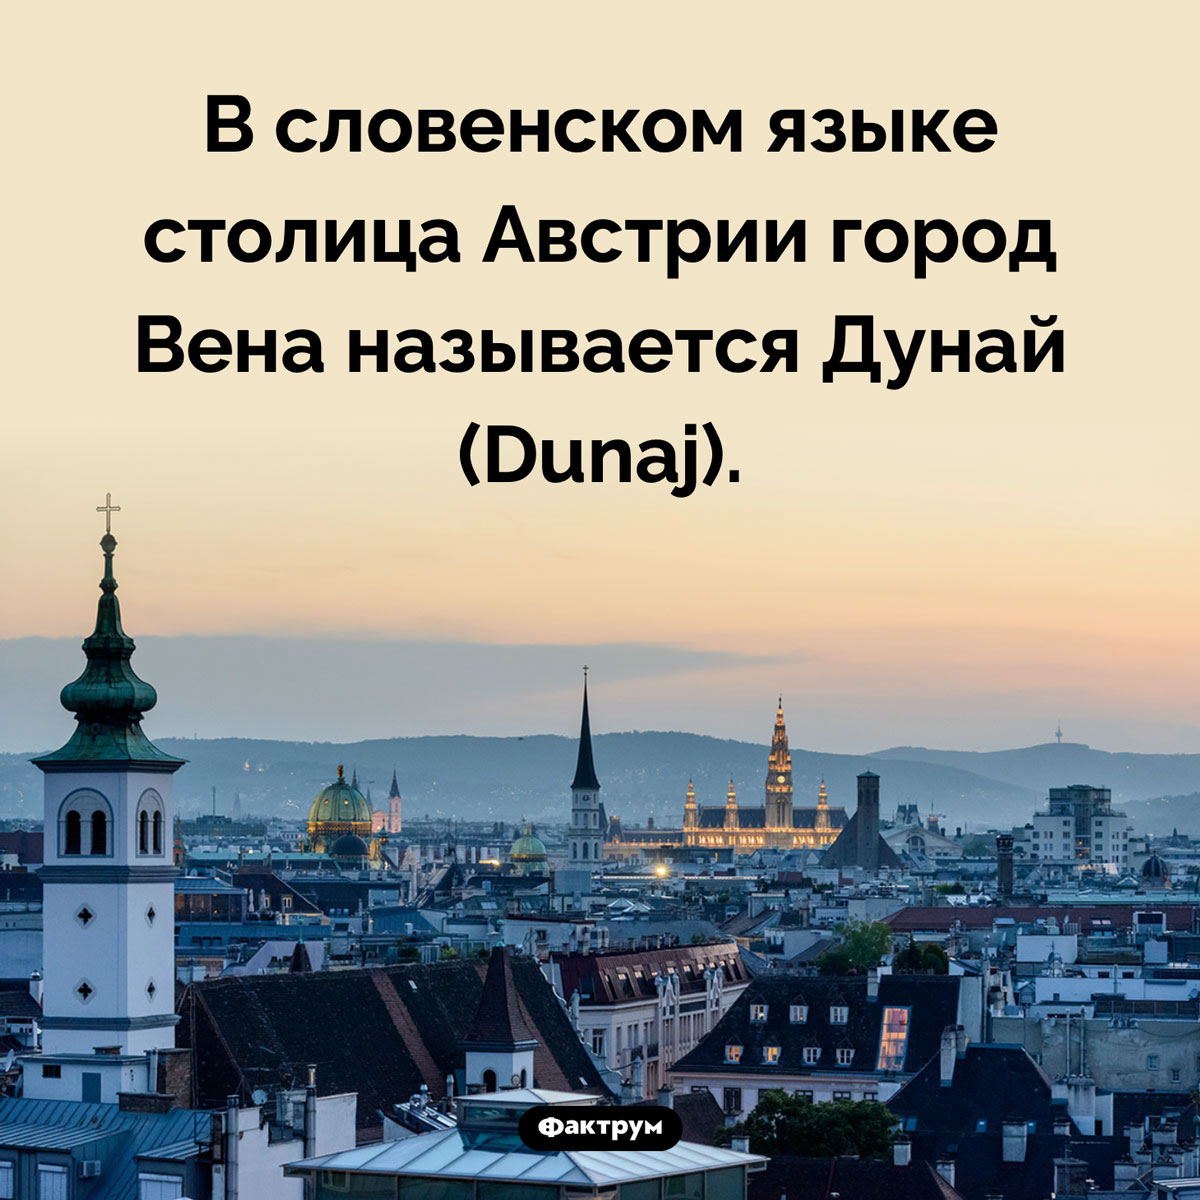 Вена — это Дунай. В словенском языке столица Австрии город Вена называется Дунай (Dunaj).